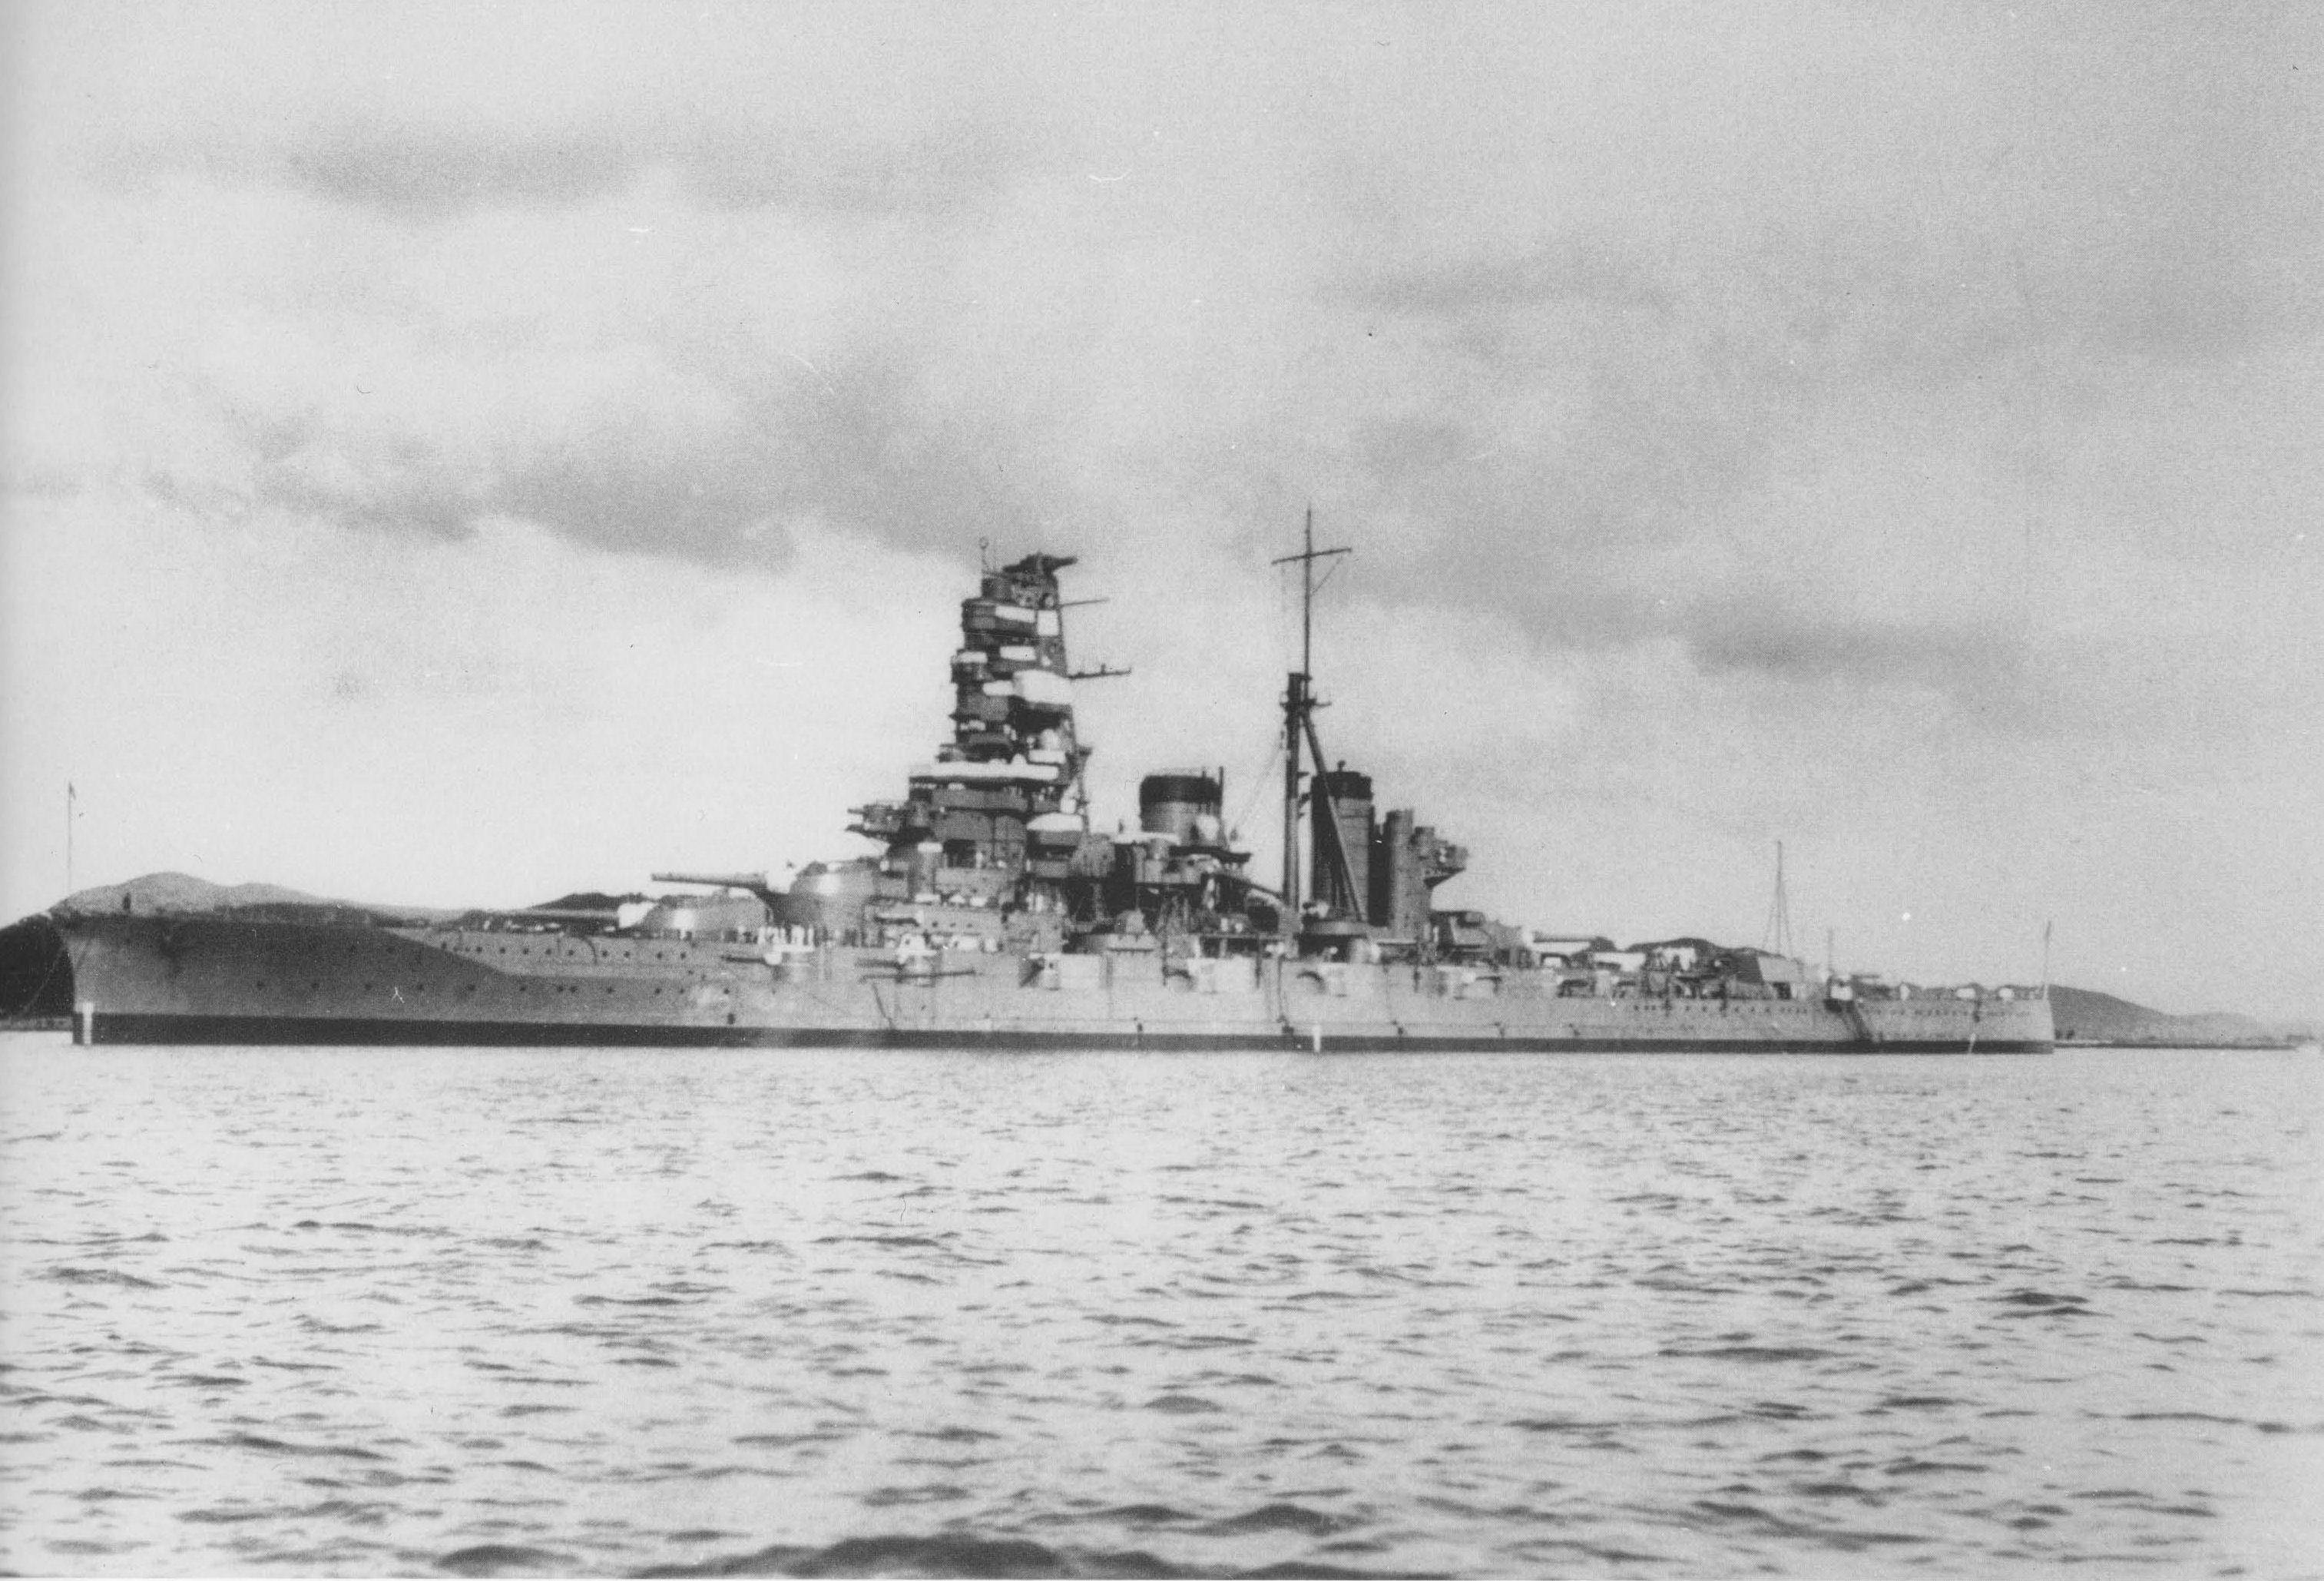 榛名号战列舰(haruna)1945年7月,由于缺乏燃油,旧日本帝国海军残存的